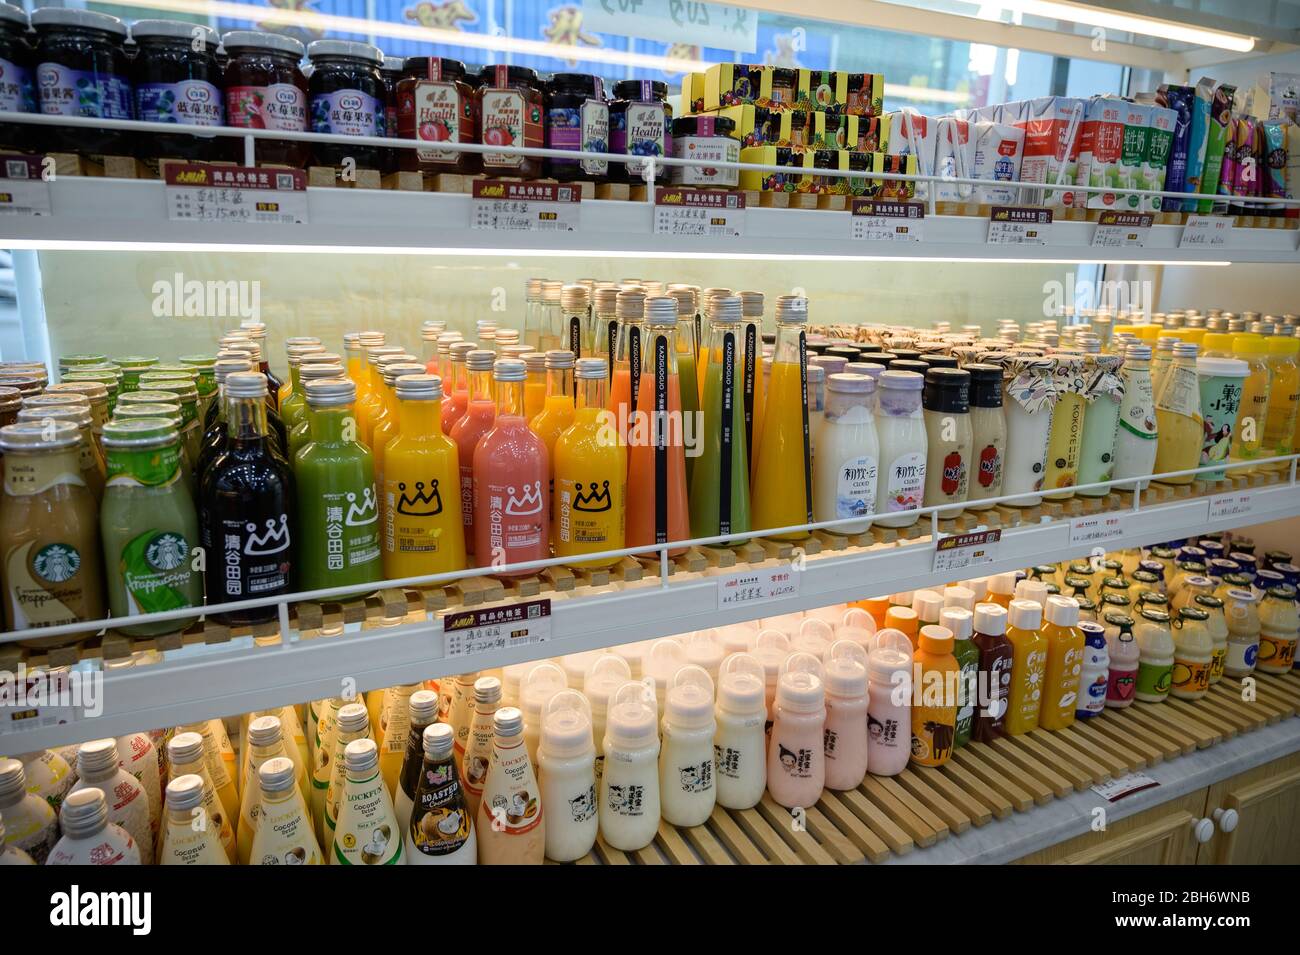 MISHAN, CHINE - 28 JUILLET 2019 : diverses boissons au magasin chinois. Mise au point sélective. Banque D'Images